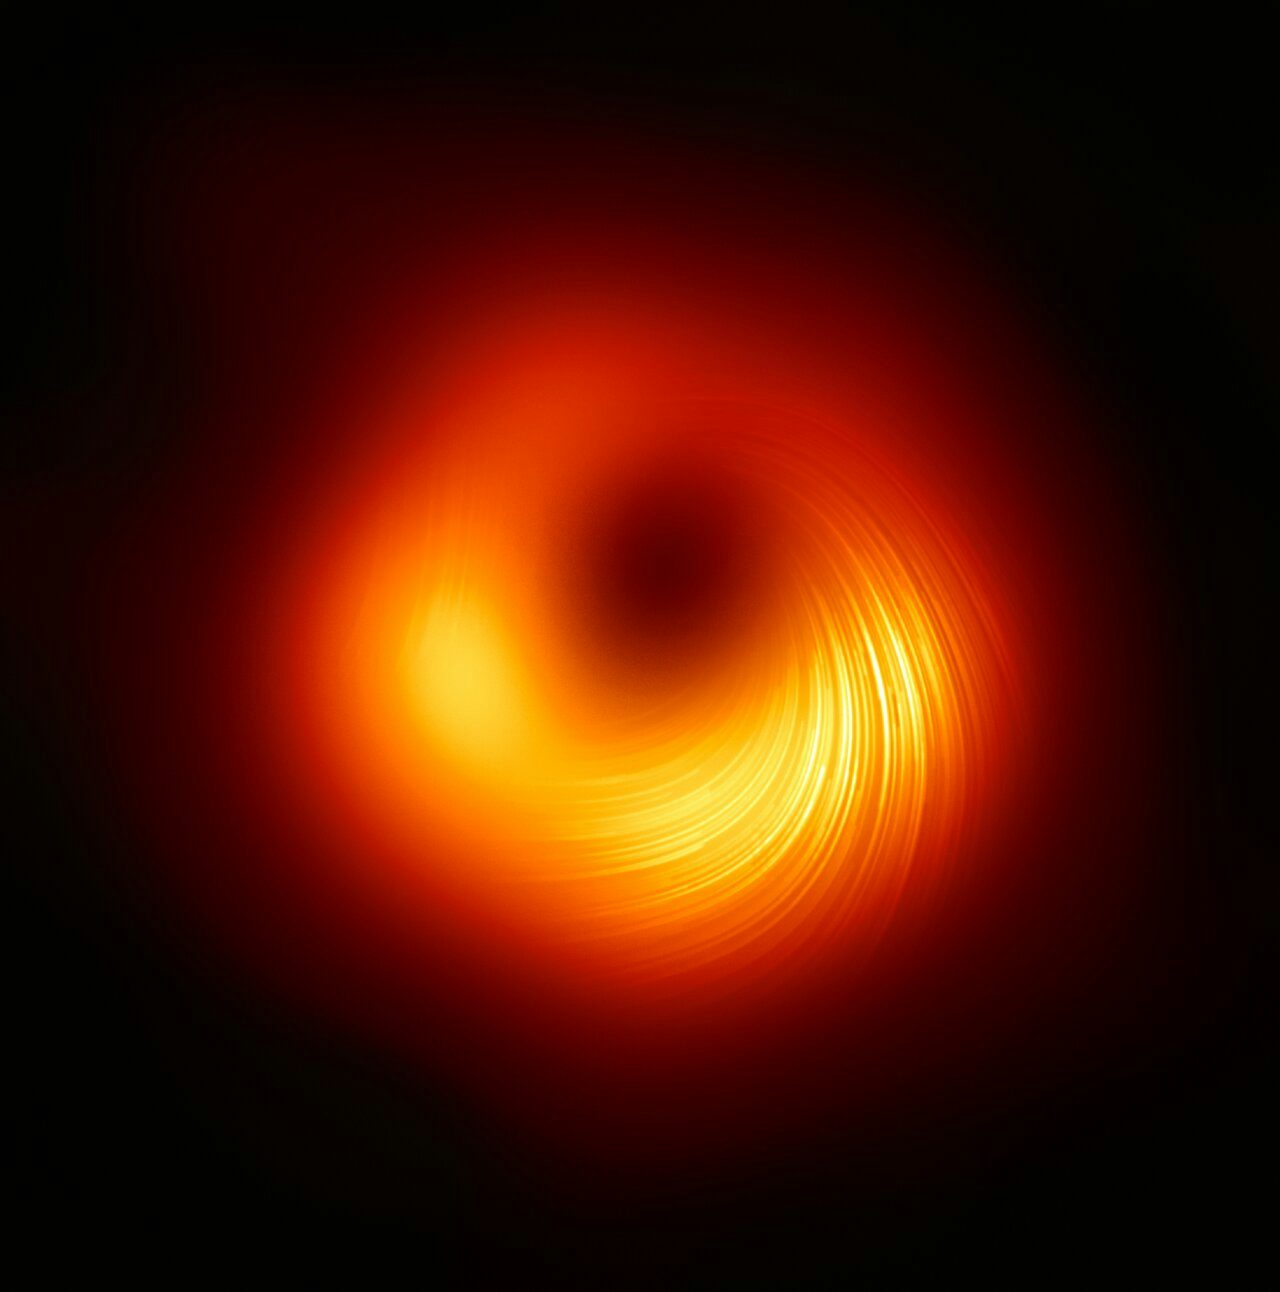 Kerr black holes enjoy massive higher-spin gauge symmetry